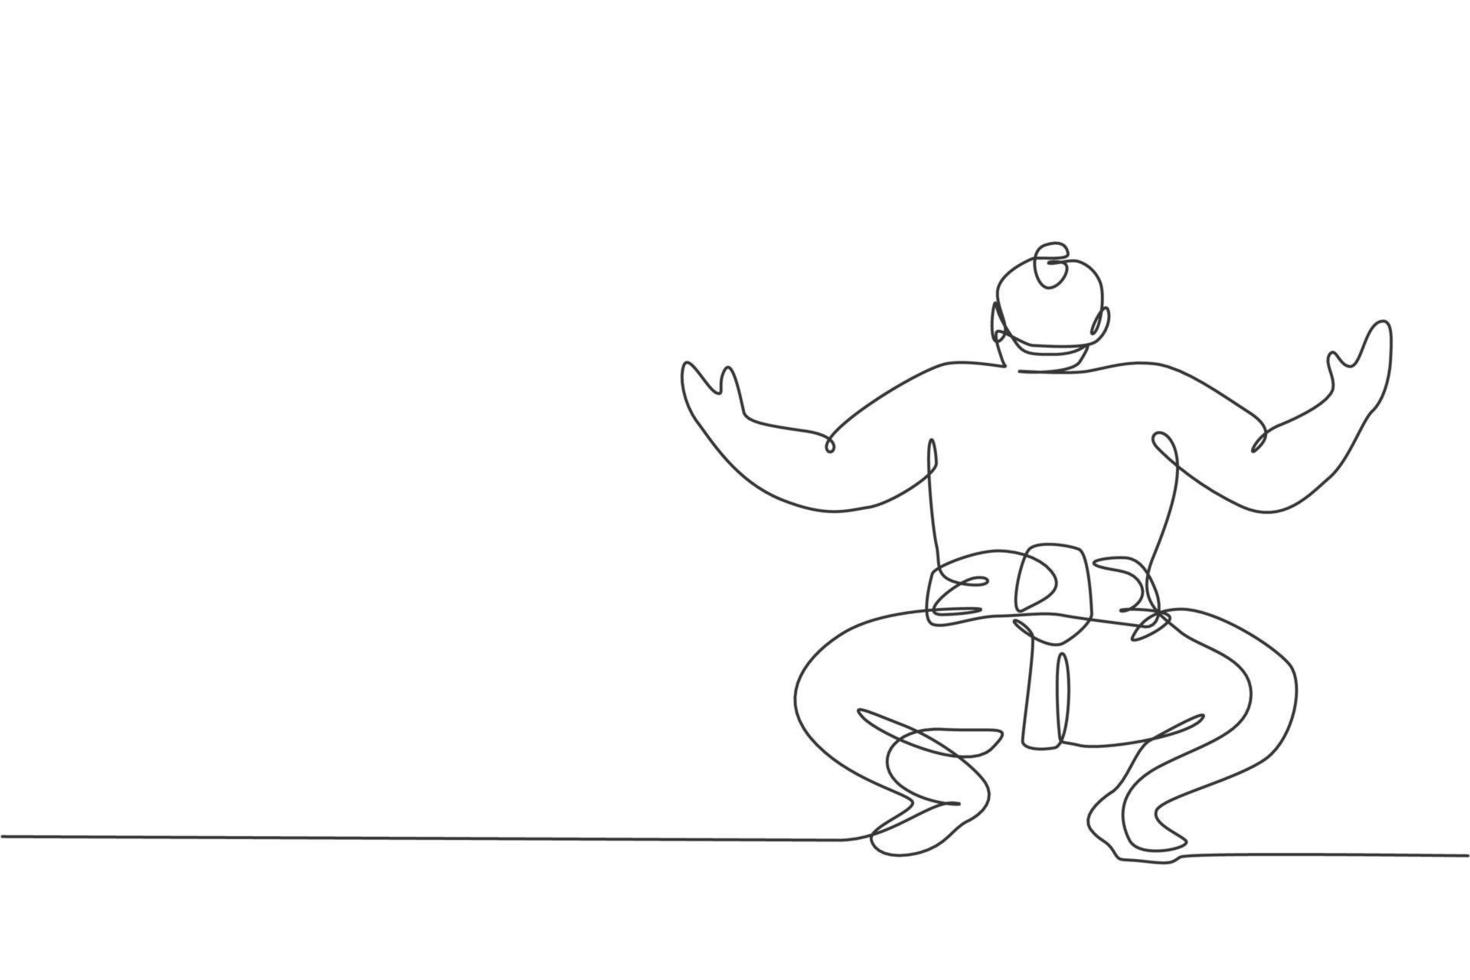 Un dibujo de línea continua del joven gran rikishi japonés se prepara para luchar en el torneo del festival. concepto de deporte de sumo tradicional. Ilustración de vector de diseño gráfico de dibujo de línea única dinámica